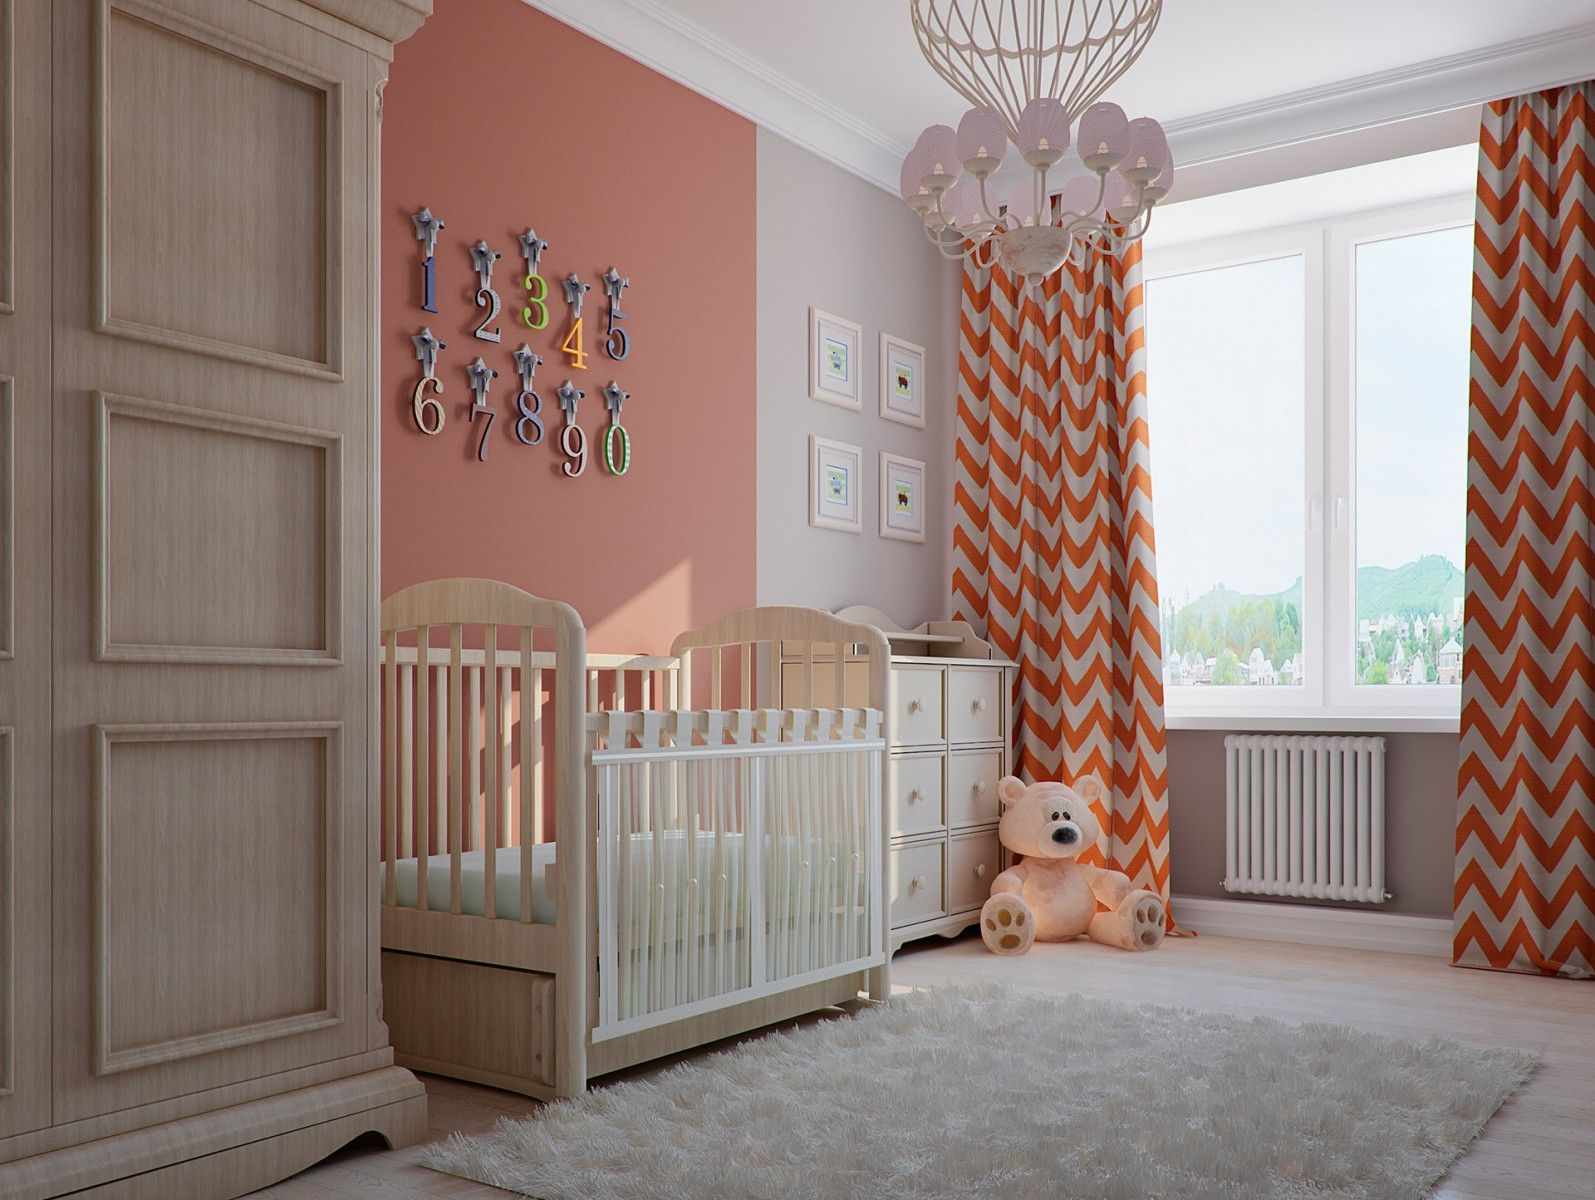 skaista persiku krāsas kombinācija dzīvokļa dizainā